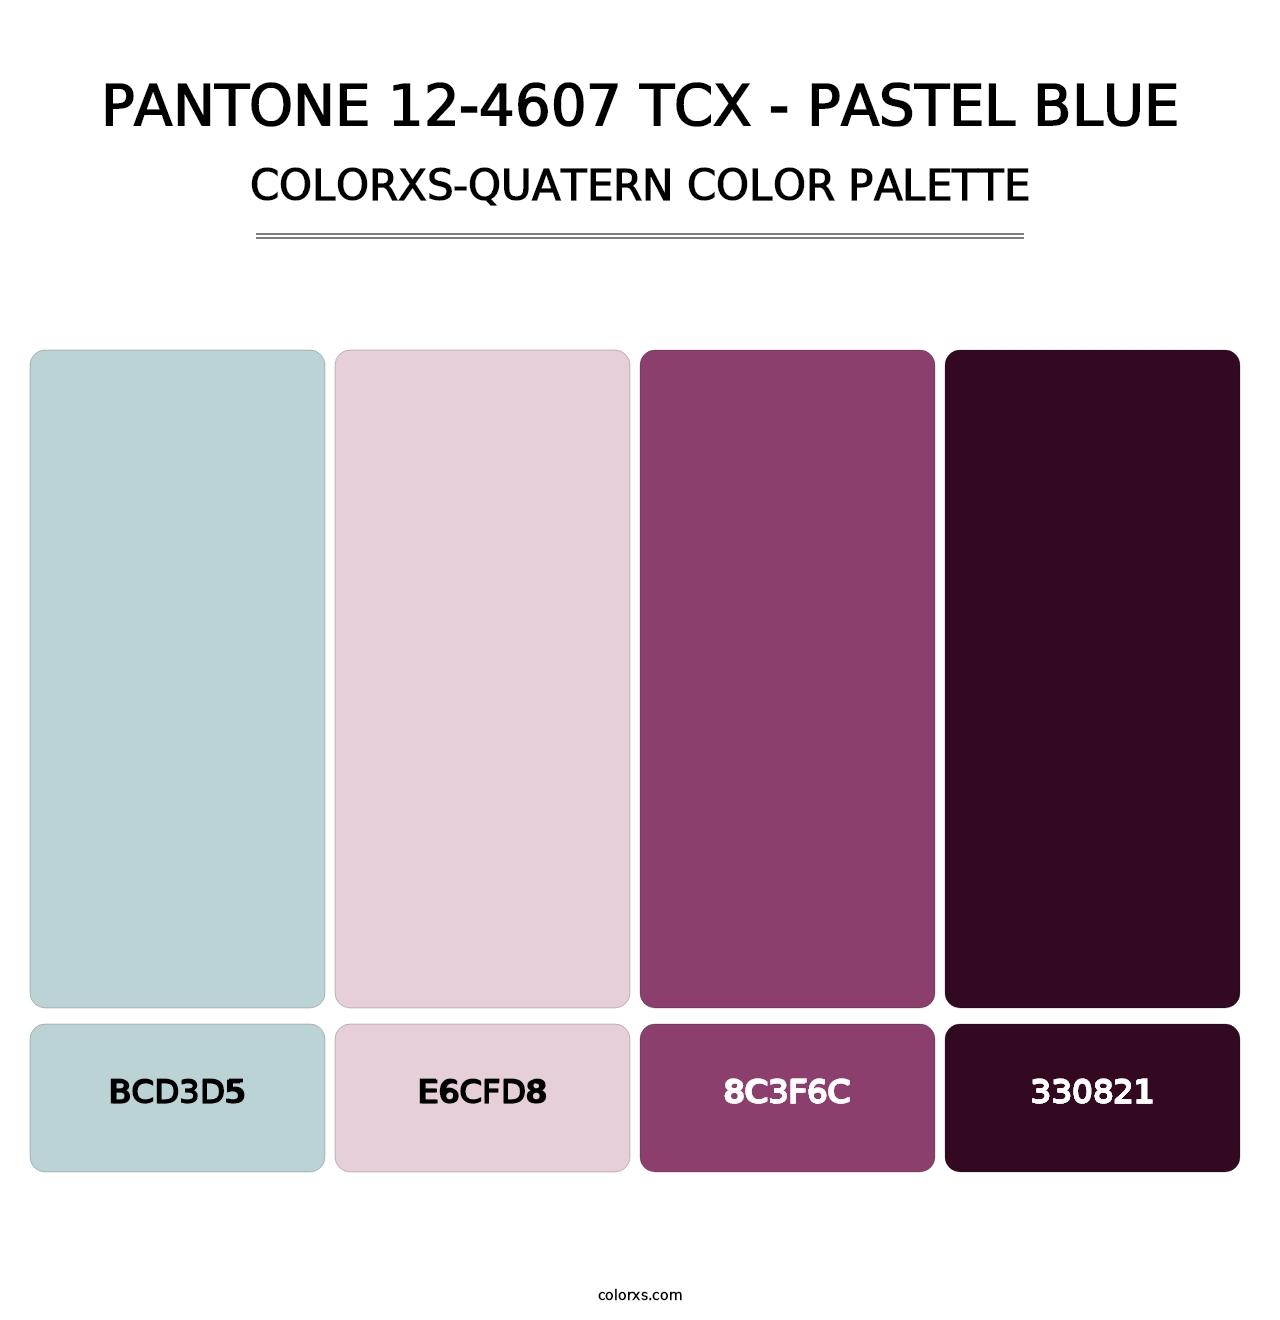 PANTONE 12-4607 TCX - Pastel Blue - Colorxs Quatern Palette